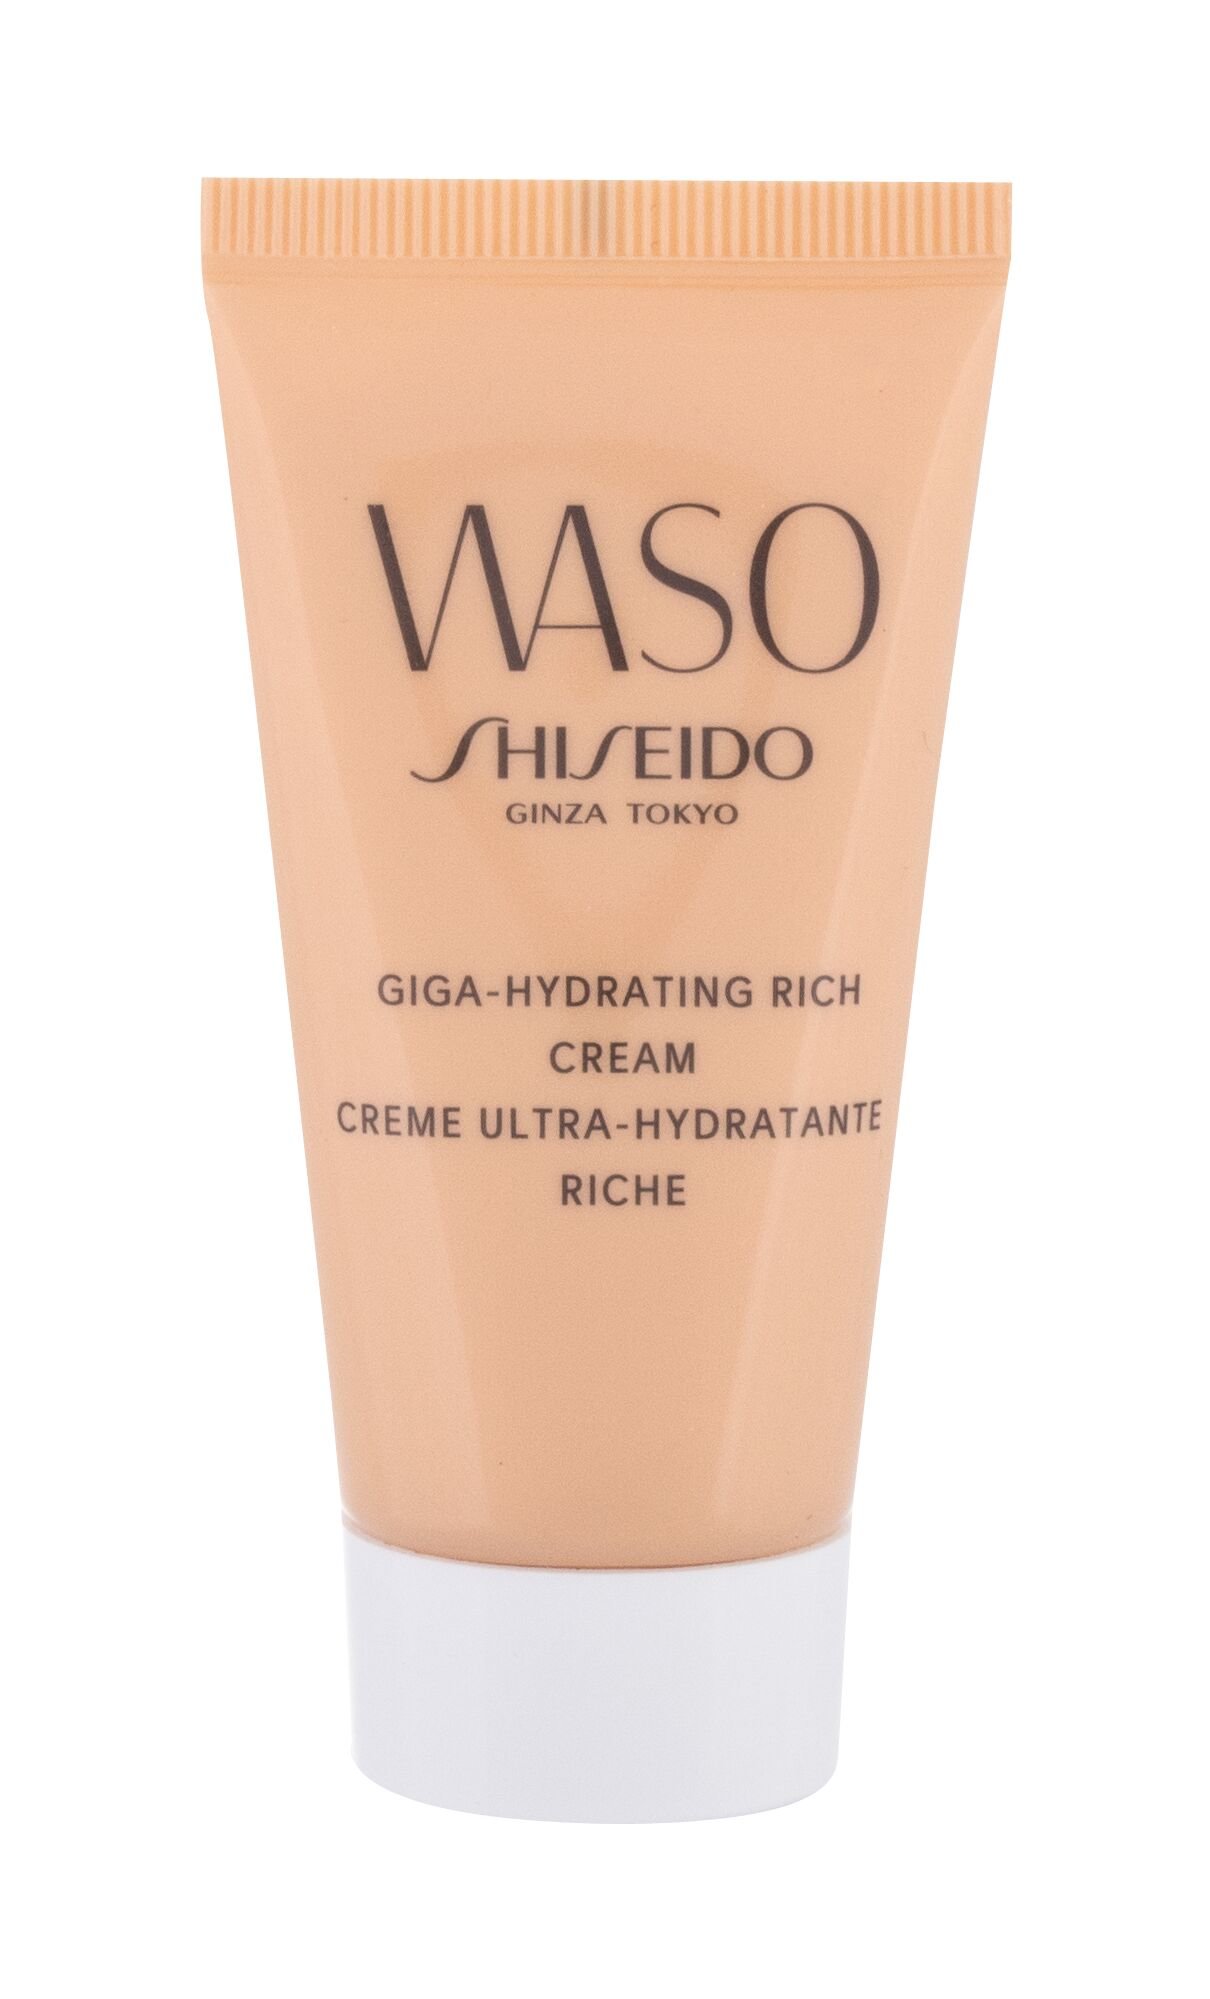 Shiseido увлажняющий. Waso мега-увлажняющий крем. Shiseido Waso Giga-Hydrating Rich Cream. Крем Shiseido Waso мега-увлажняющий. Крем шисейдо Васо для лица.